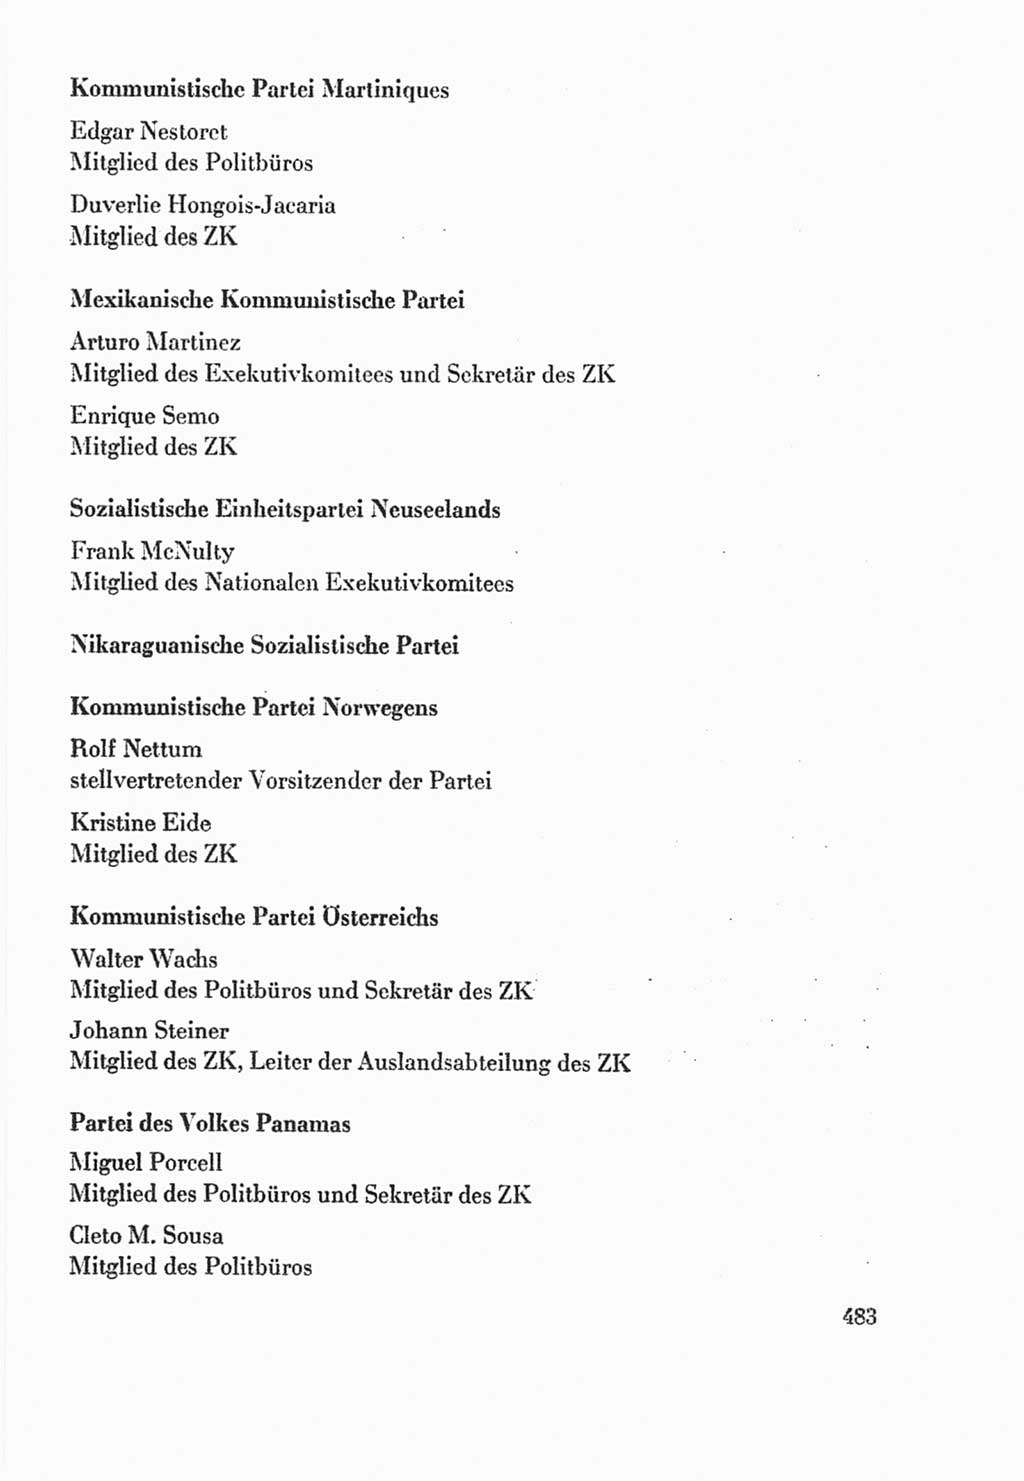 Protokoll der Verhandlungen des Ⅸ. Parteitages der Sozialistischen Einheitspartei Deutschlands (SED) [Deutsche Demokratische Republik (DDR)] 1976, Band 2, Seite 483 (Prot. Verh. Ⅸ. PT SED DDR 1976, Bd. 2, S. 483)